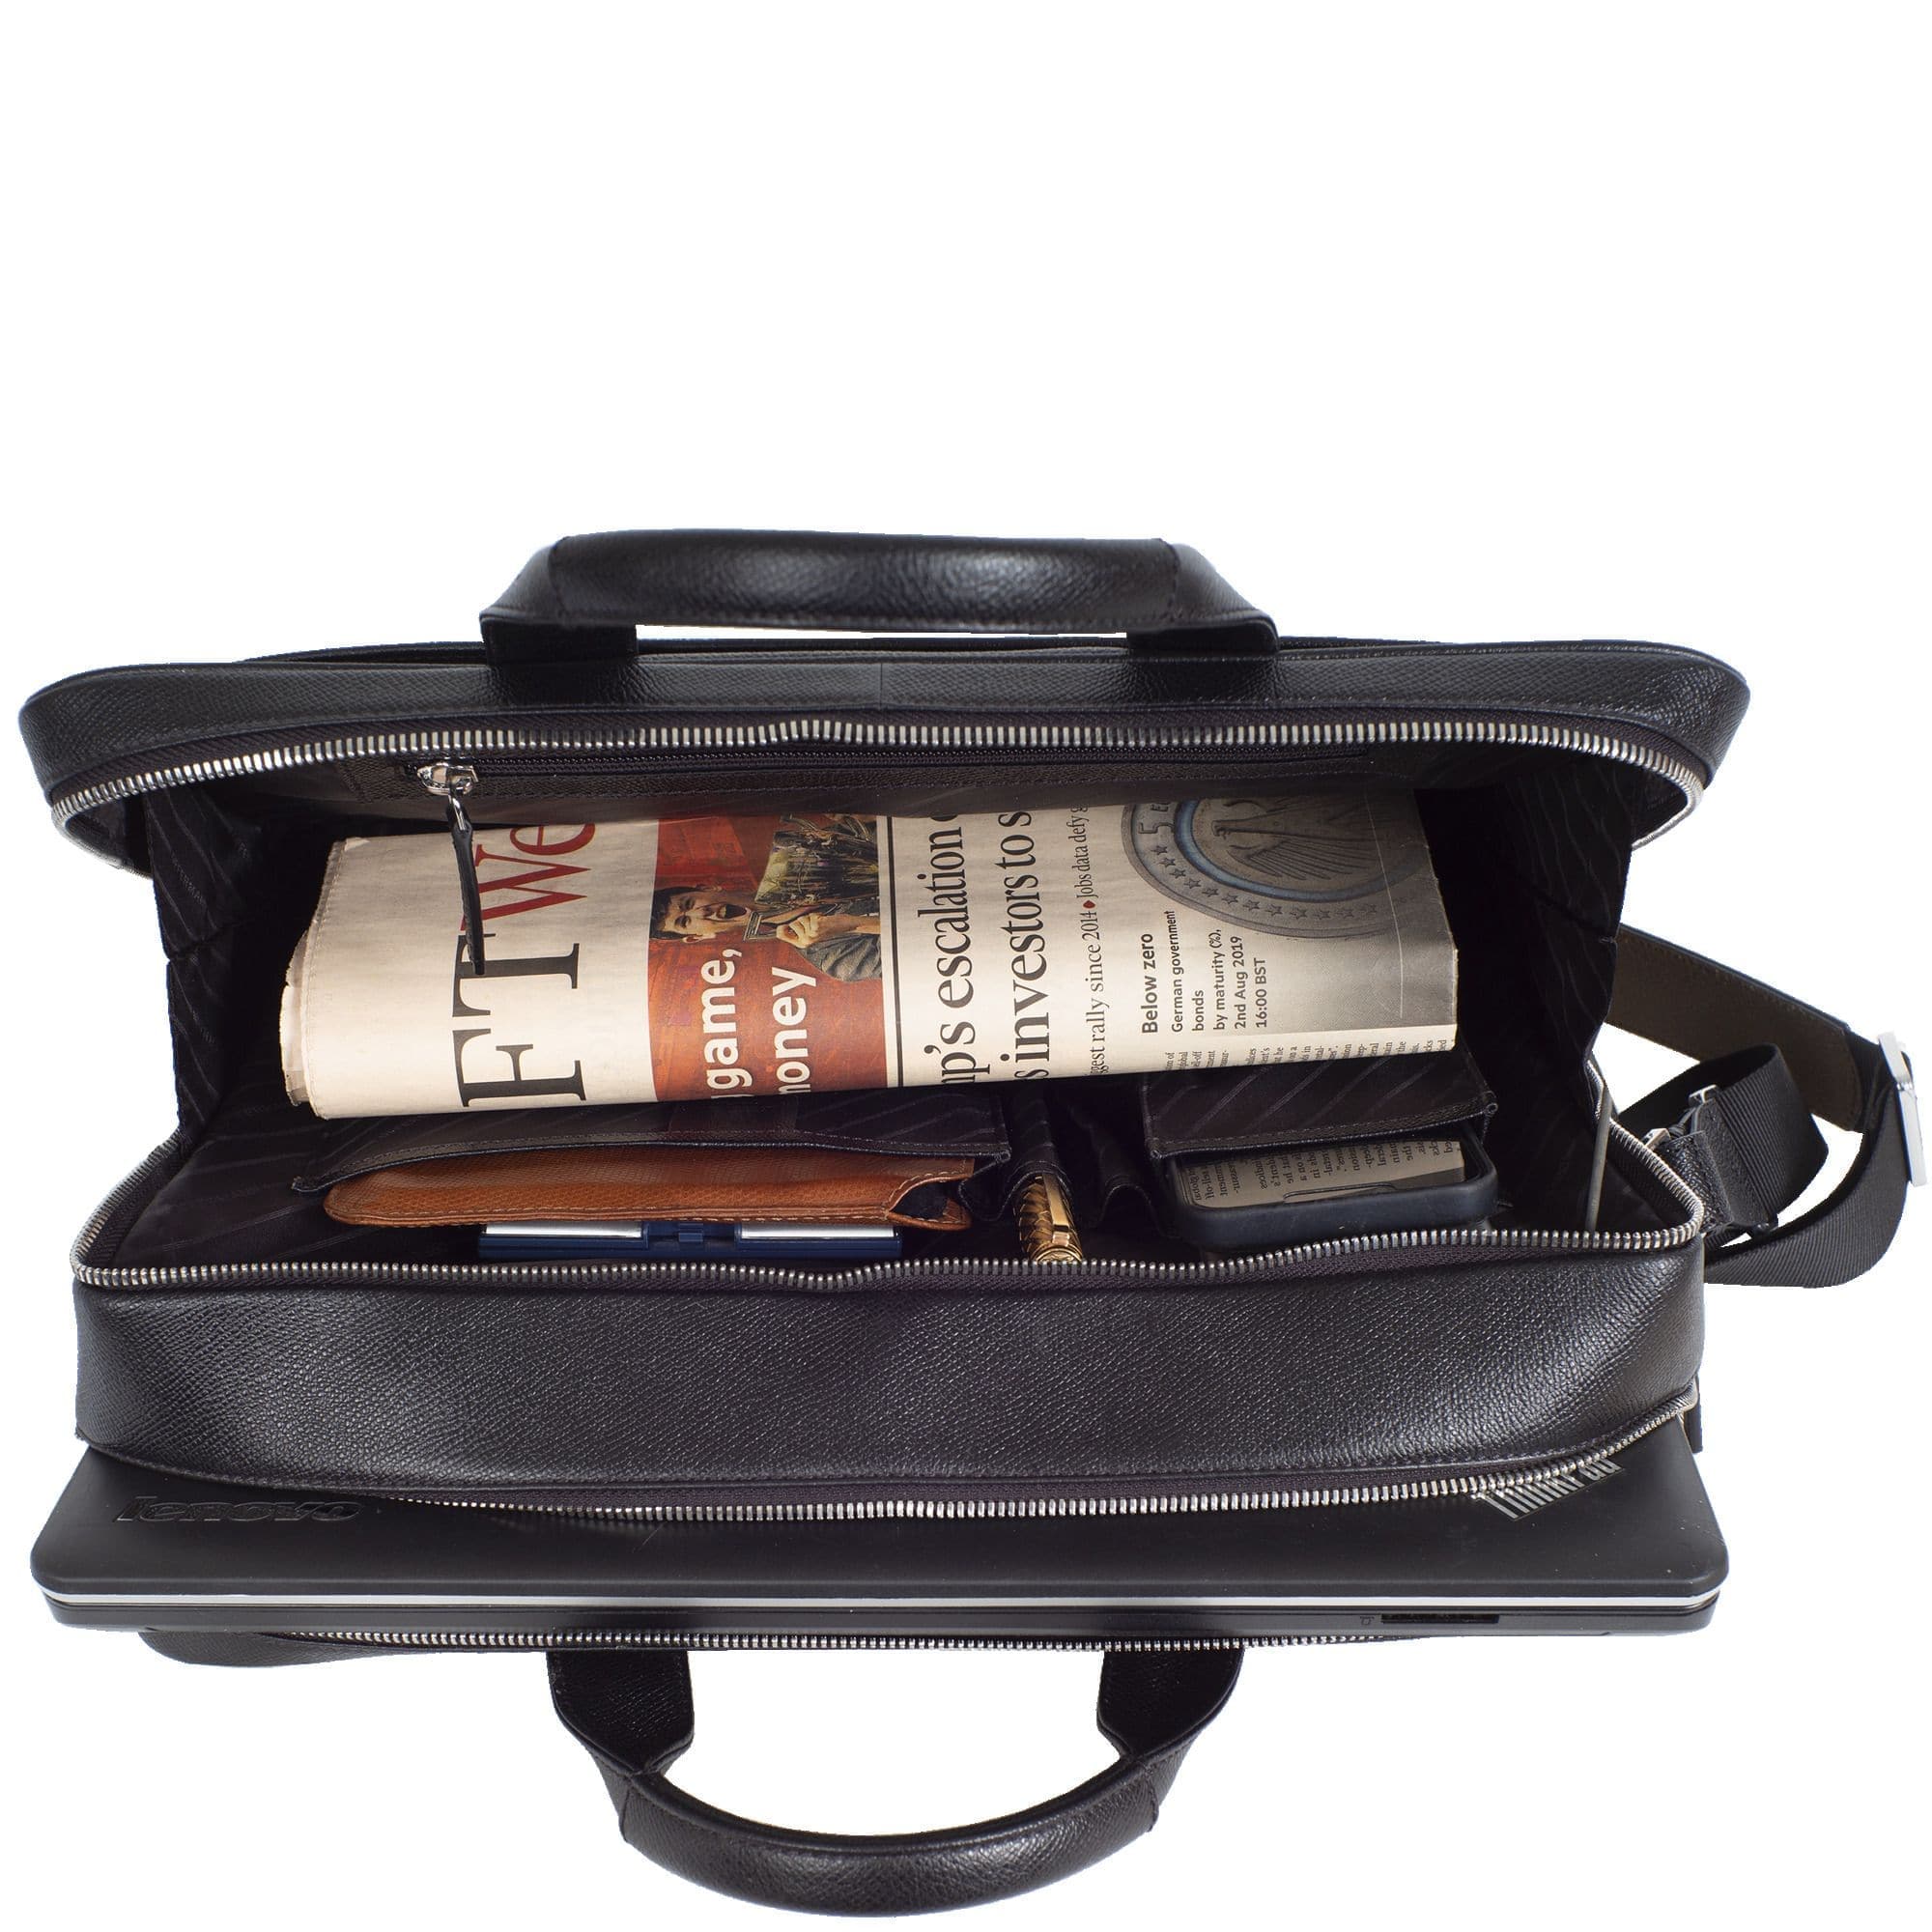 Businesstasche Laptoptasche 15 Zoll geprägtes Leder schwarz 2 große Fächer